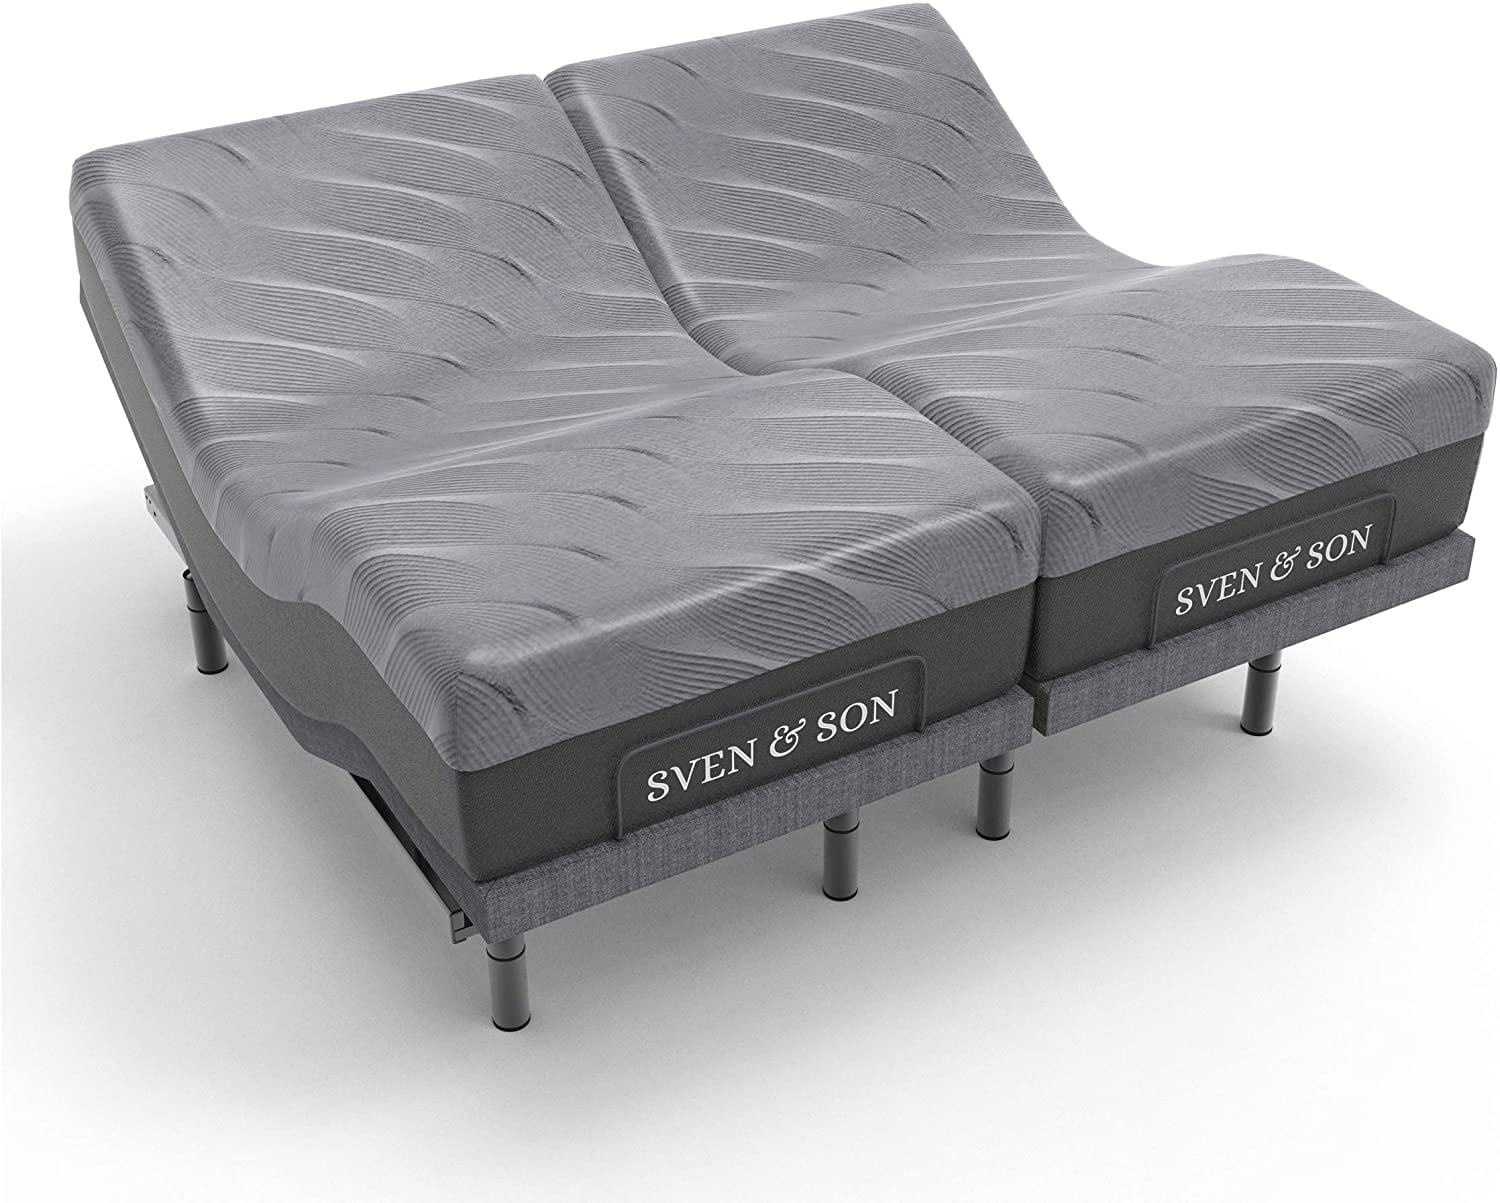 Sven Son Split King Adjustable Bed, Split Queen Adjustable Bed Base